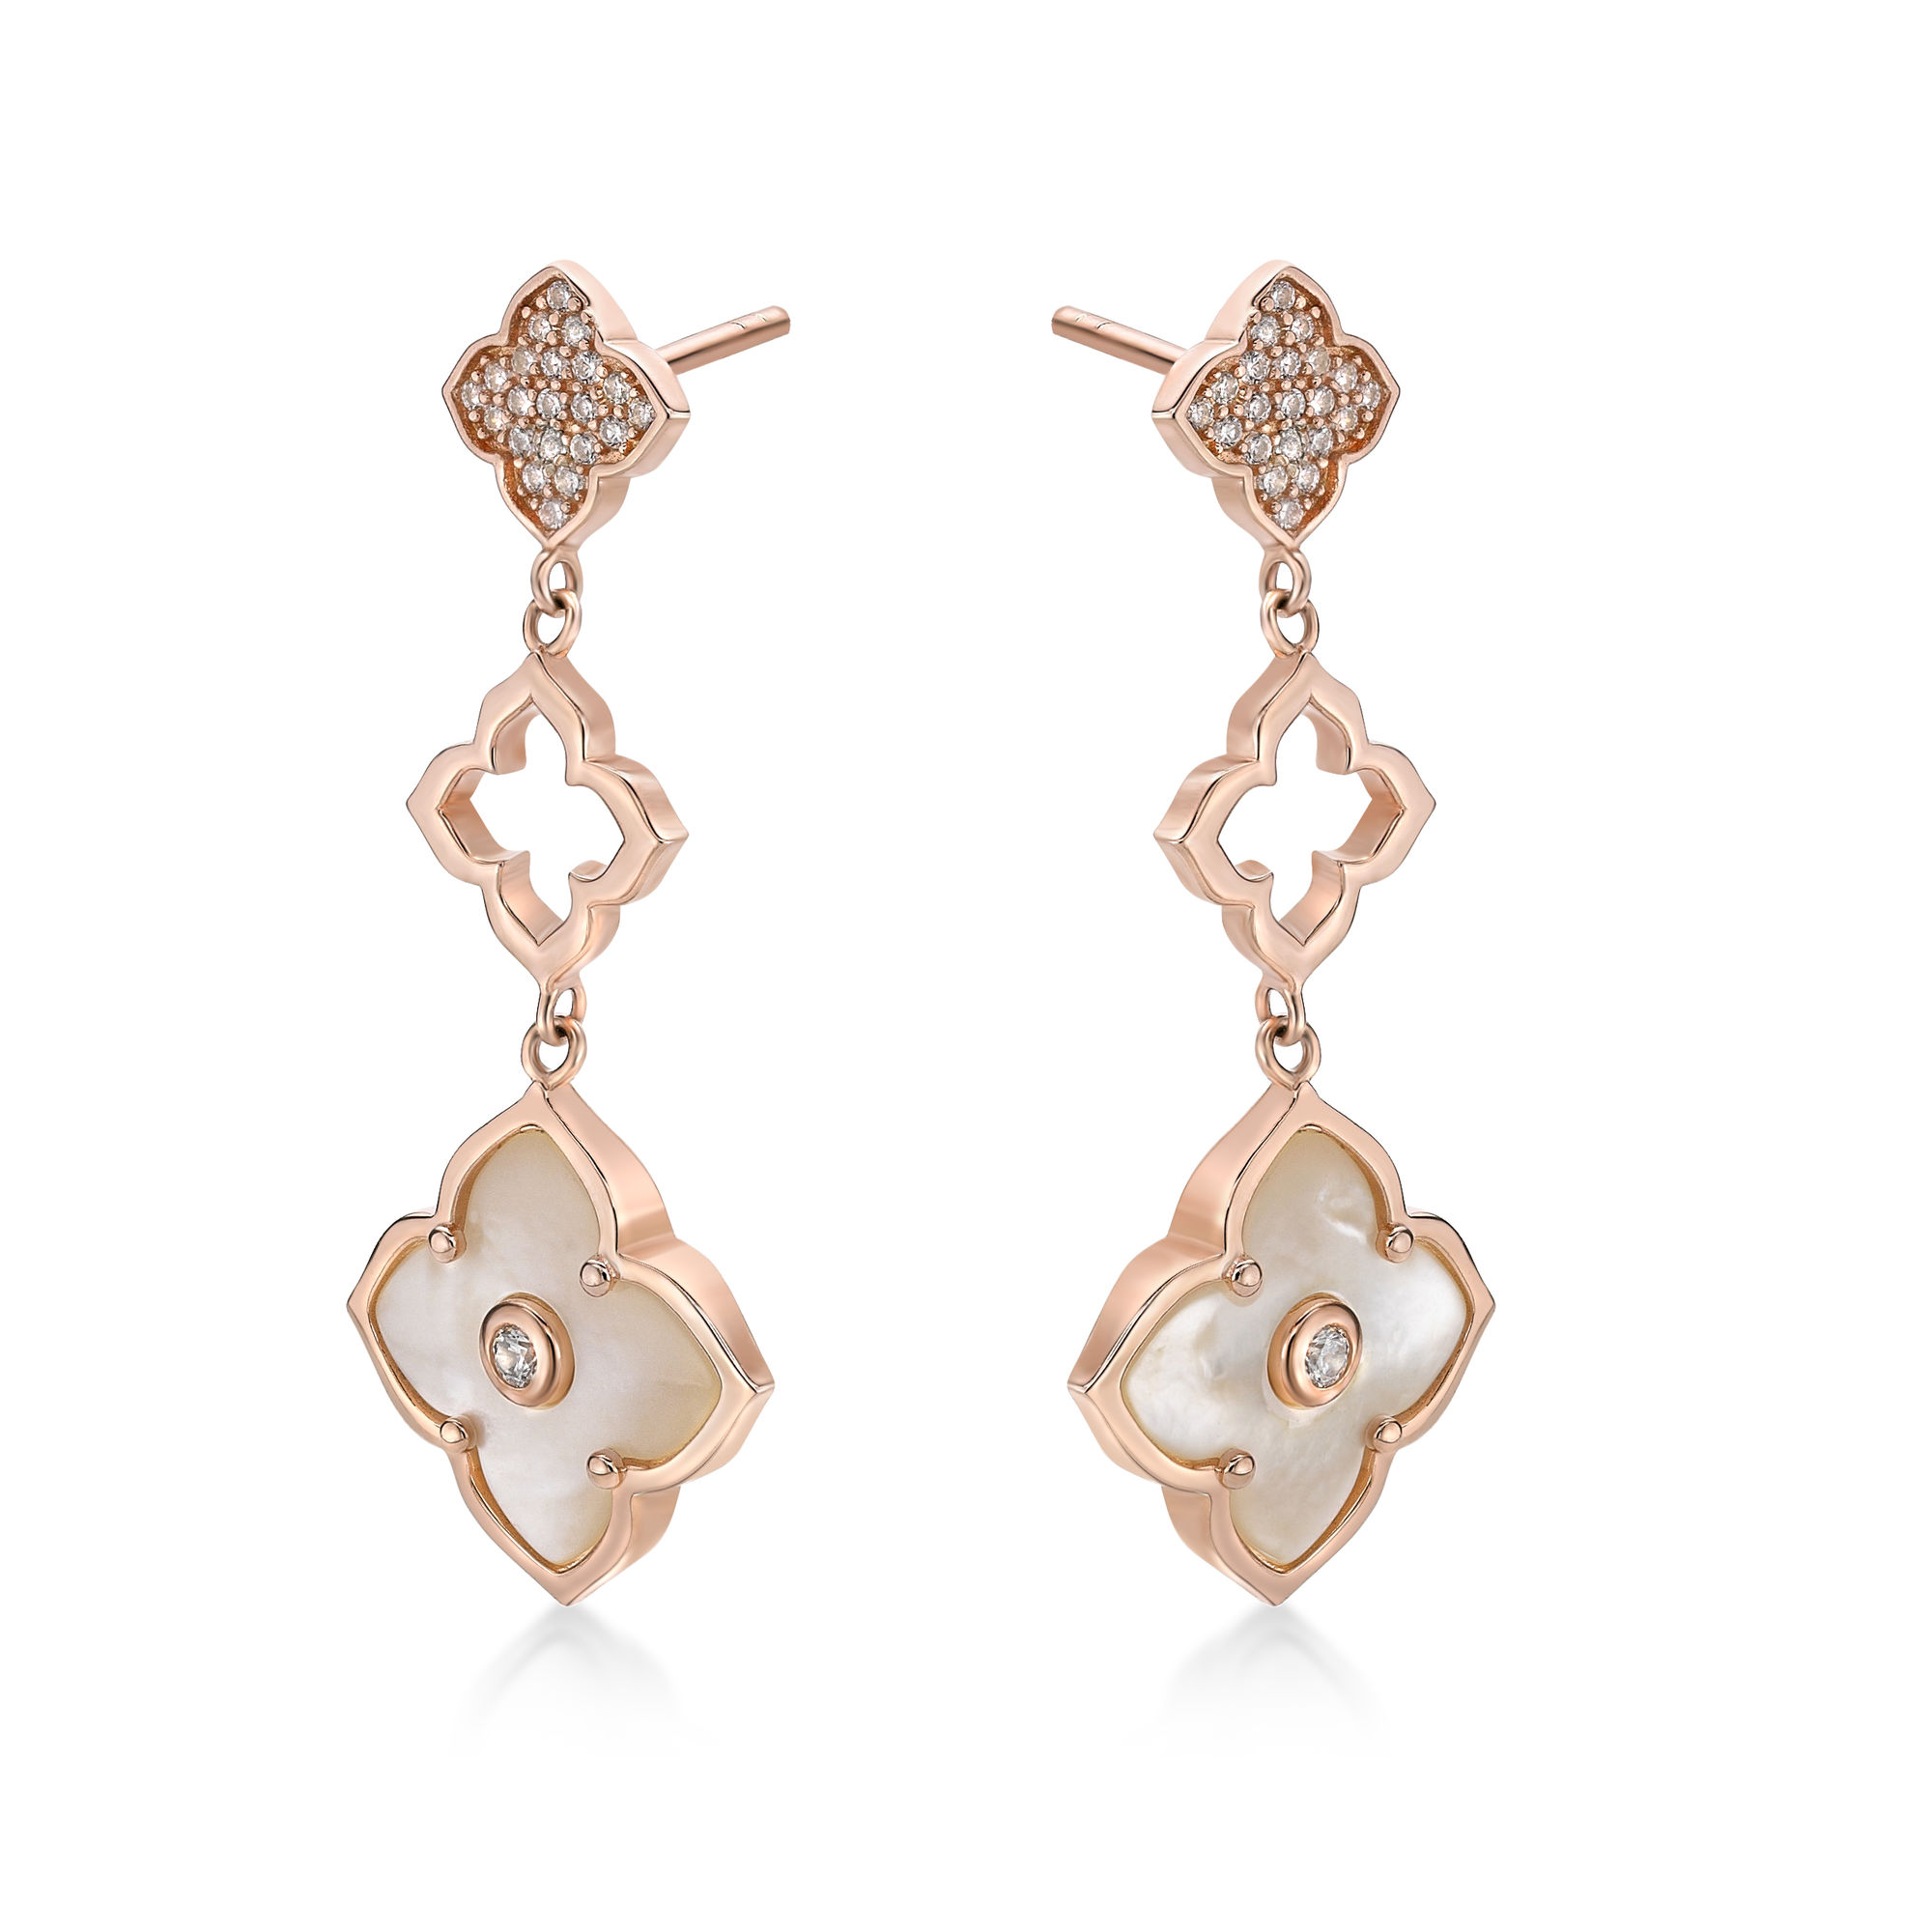 48640-earrings-fashion-jewelry-pink-sterling-silver-48640.jpg